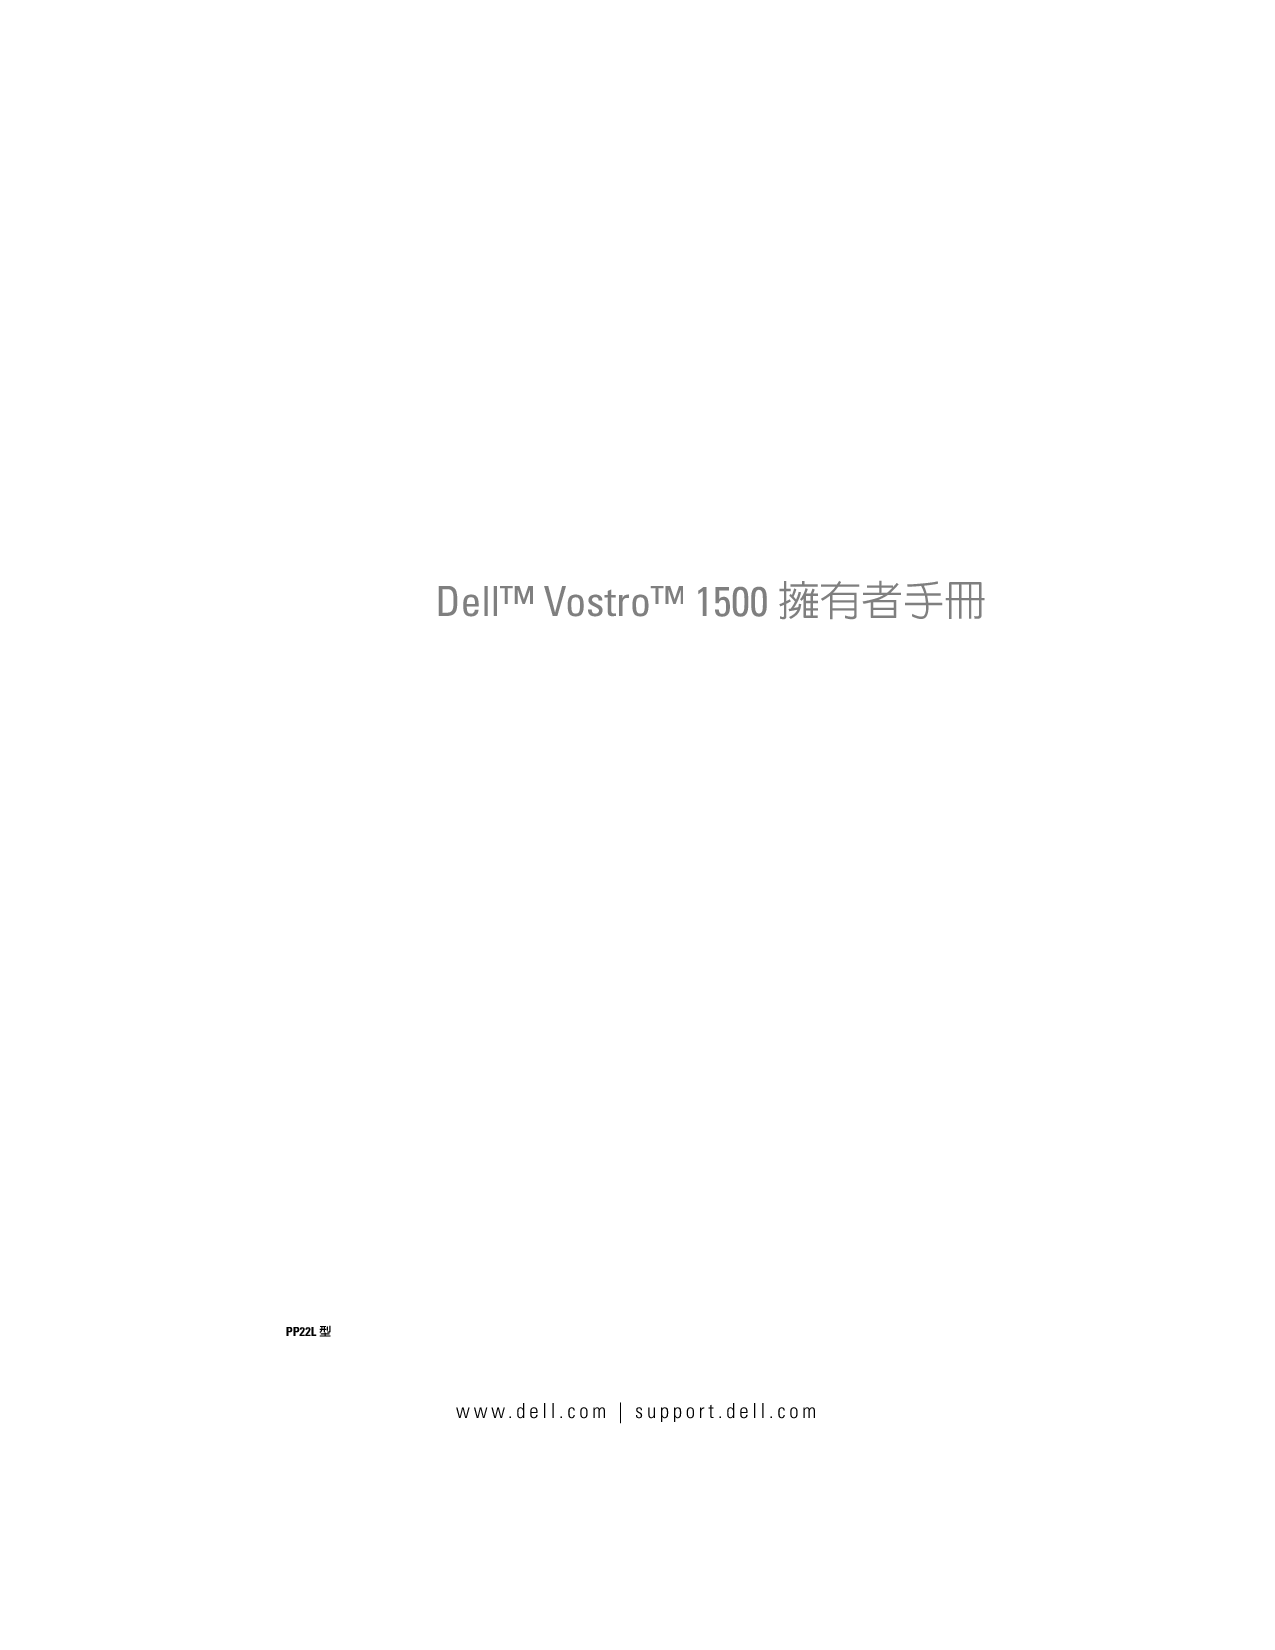 戴尔 Dell Vostro 1500 繁体 用户手册 封面